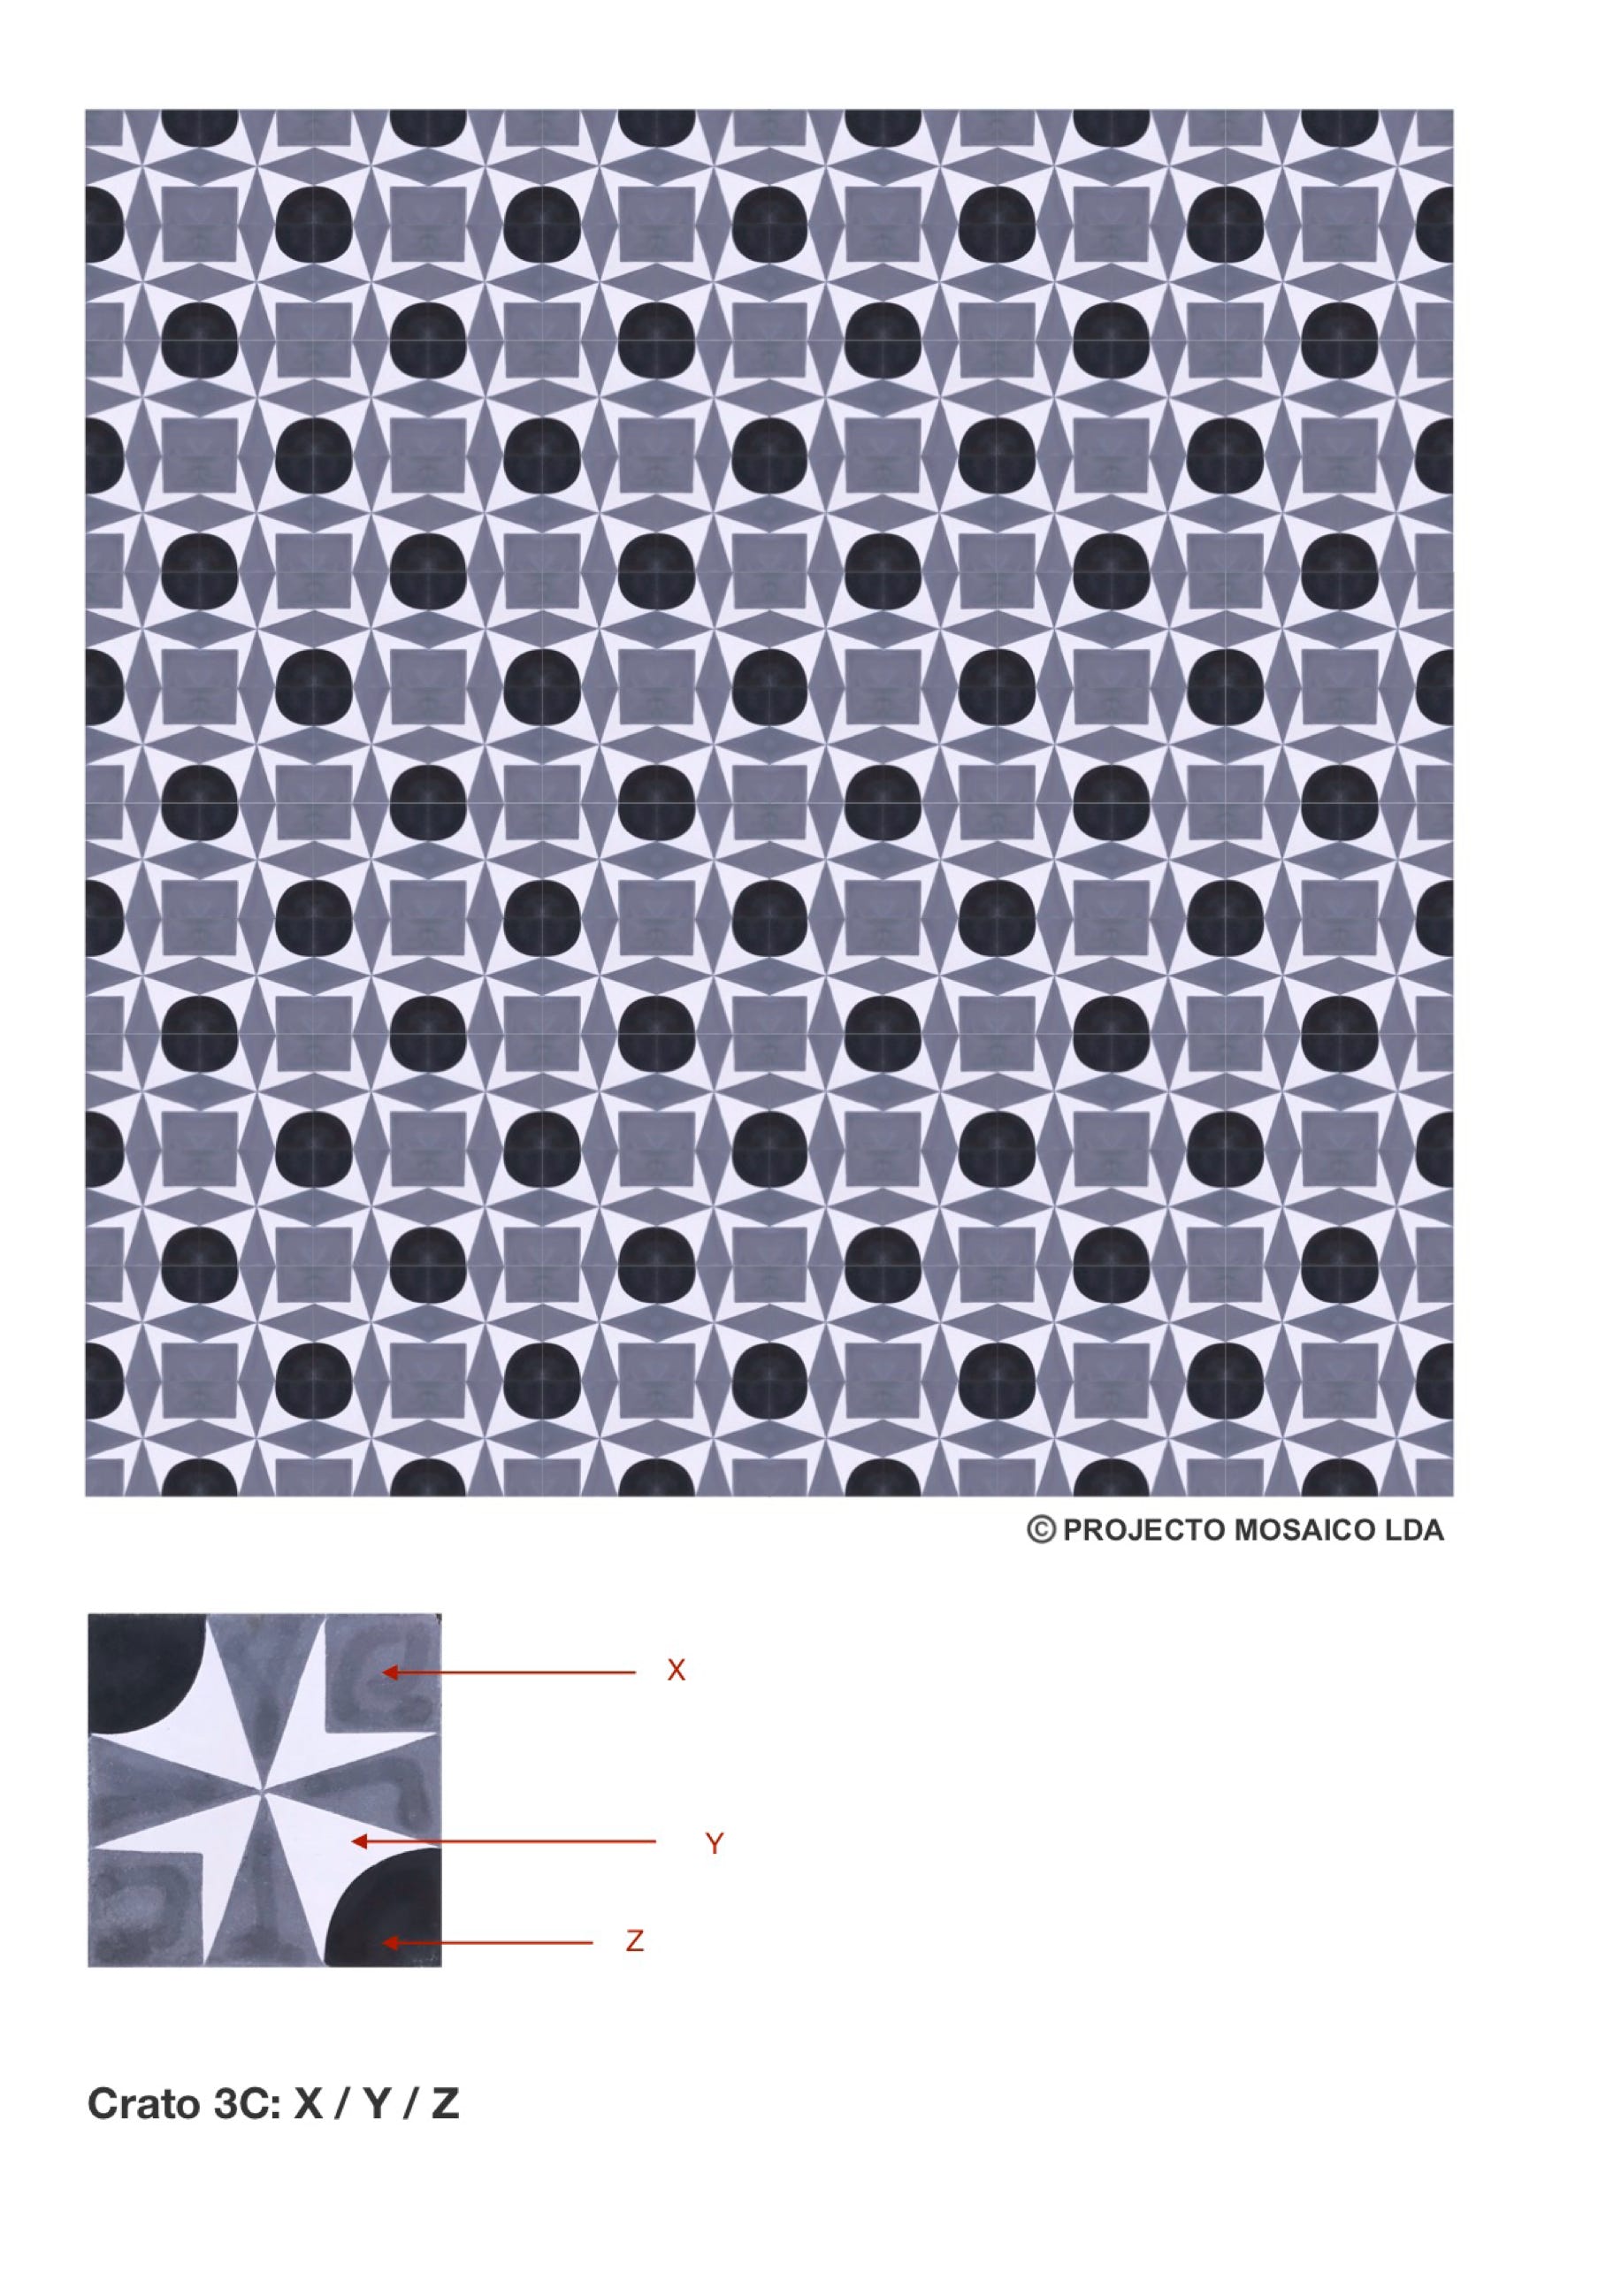 illustração de aplicação do mosaico hidráulico ref: Crato 3C